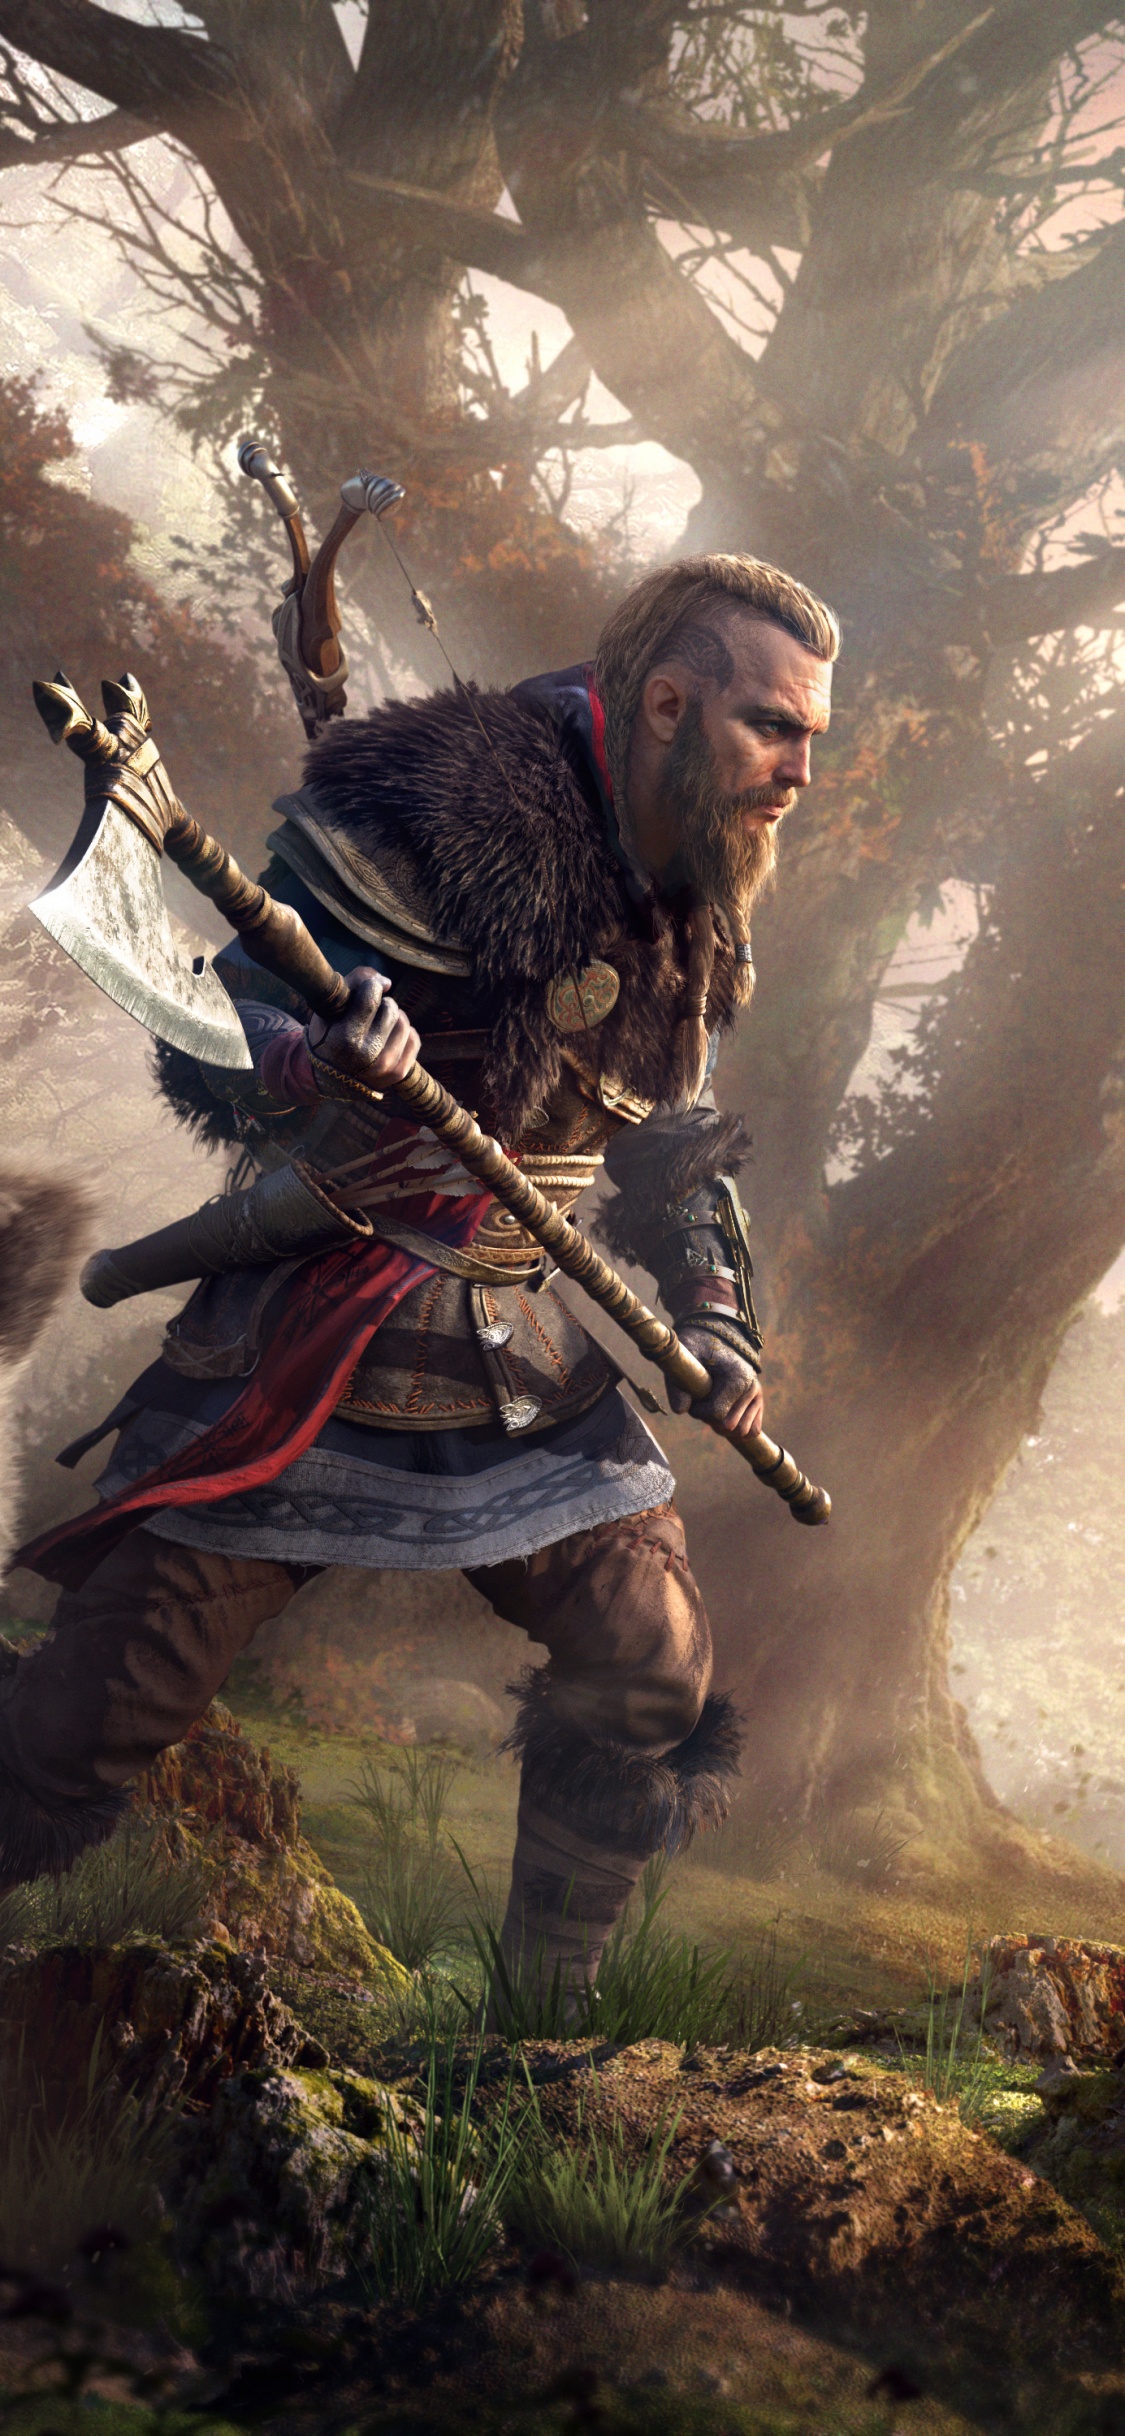 Eivor 4K Wallpaper, Viking raider, Assassin's Creed